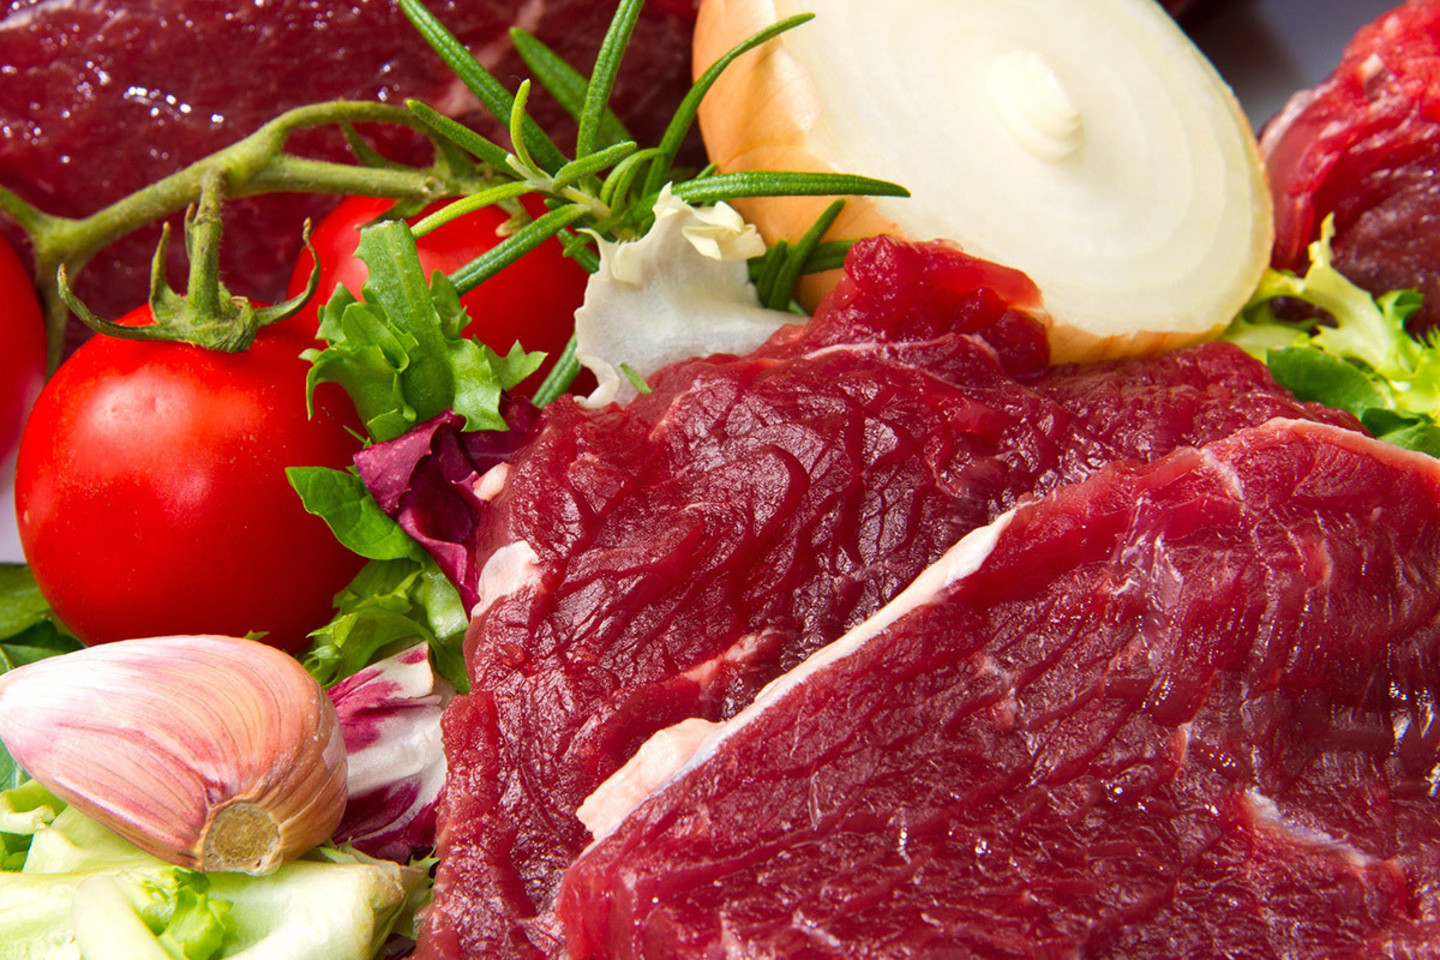 Mėsos spalva – vienas svarbiausių kriterijų renkantis parduotuvėje mėsą. Natūrali, lygi mėsos spalva asocijuojasi su šviežumu, maloniu skoniu.<br>123rf.com